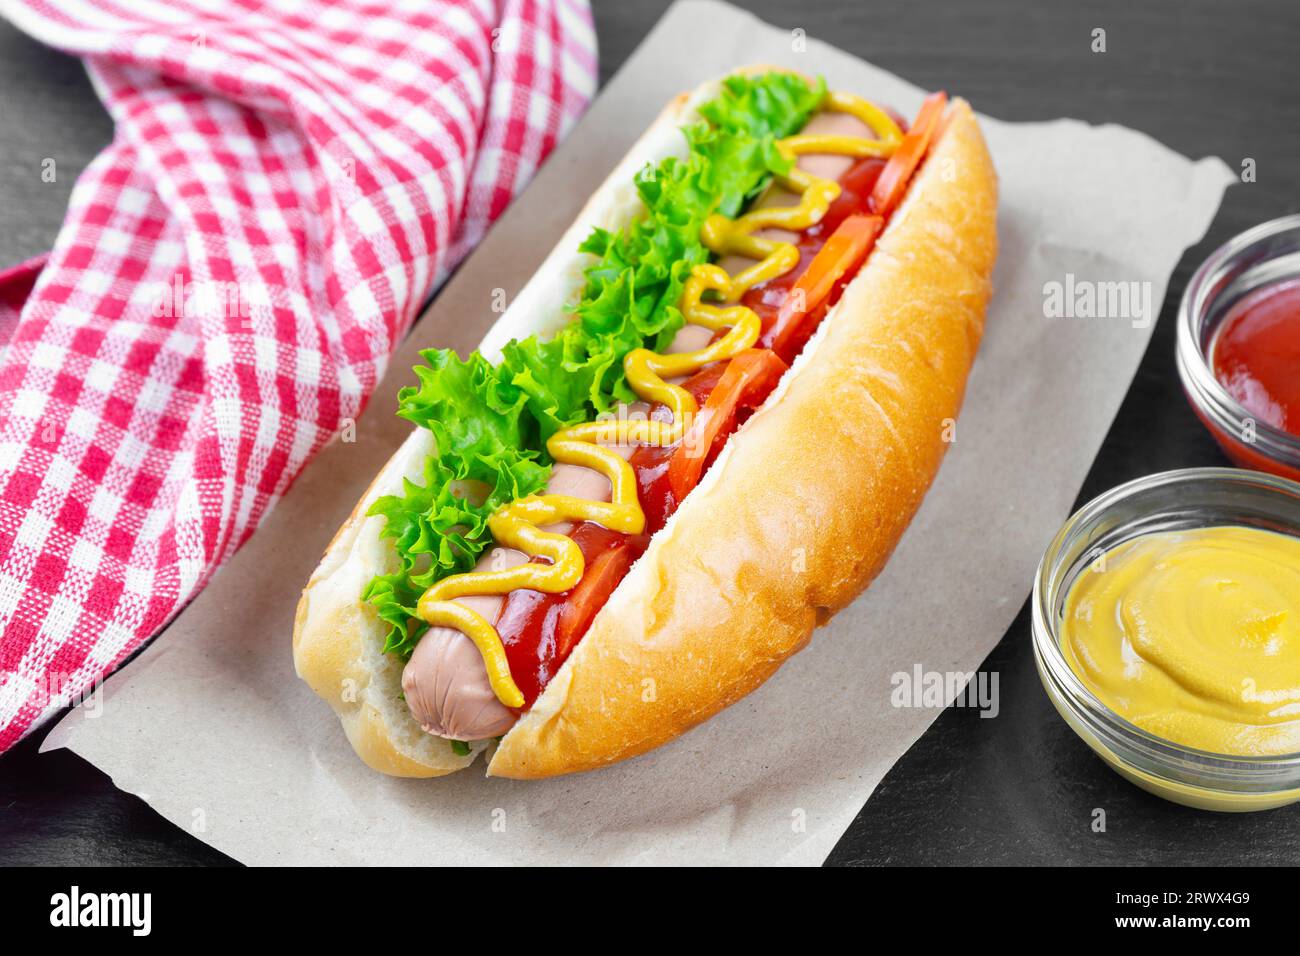 Hot Dog maison avec moutarde jaune, ketchup, tomate et feuilles de salade fraîches sur fond d'ardoise noire. Restauration rapide, cuisine de rue, cuisine américaine Banque D'Images